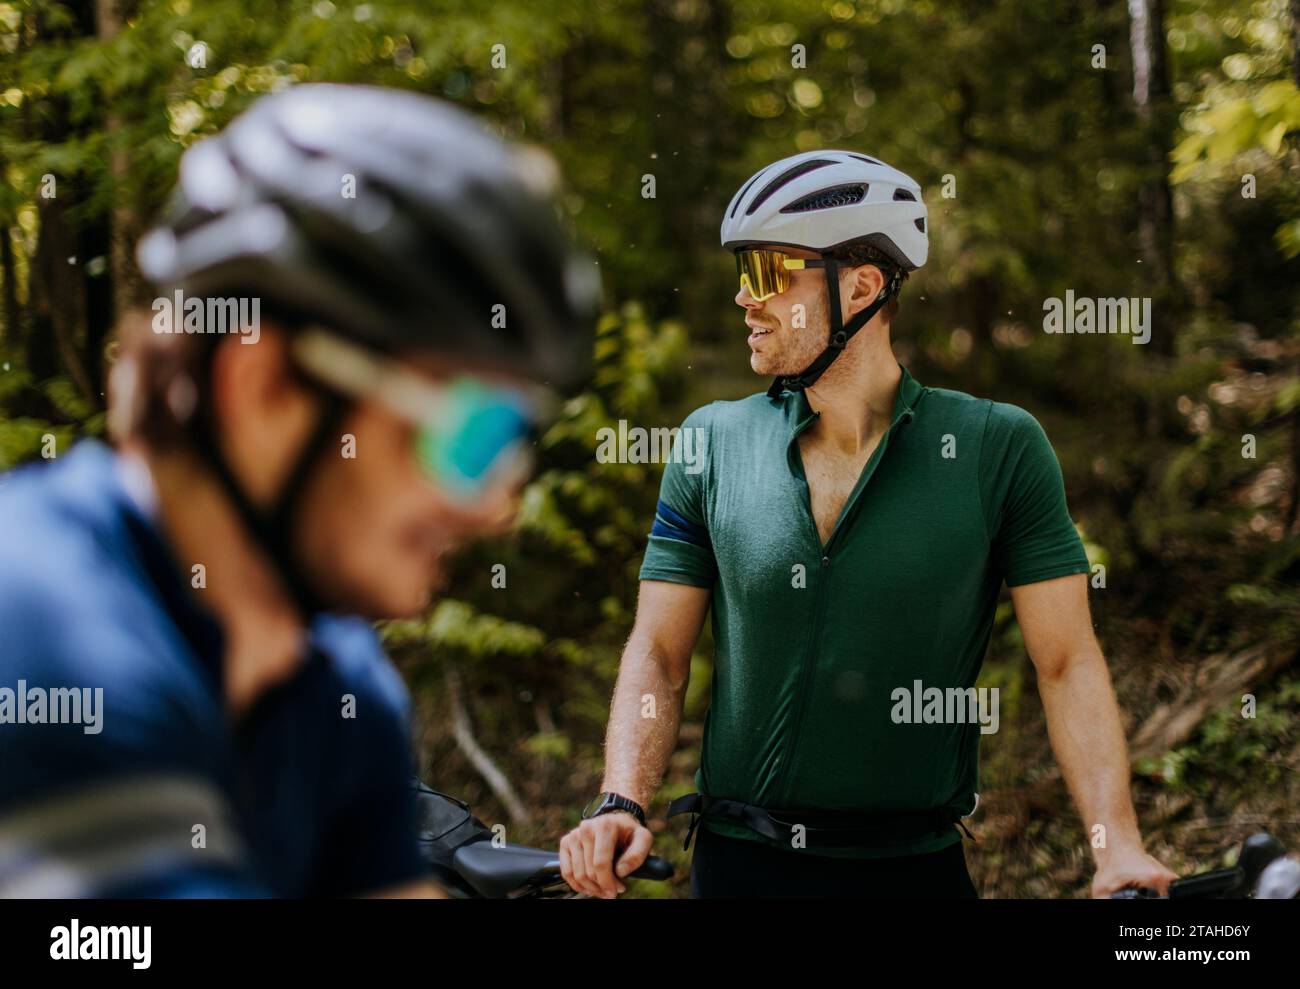 Zwei männliche Radfahrer mit Sonnenbrille und Fahrradhelmen in einem bewaldeten Gebiet Stockfoto